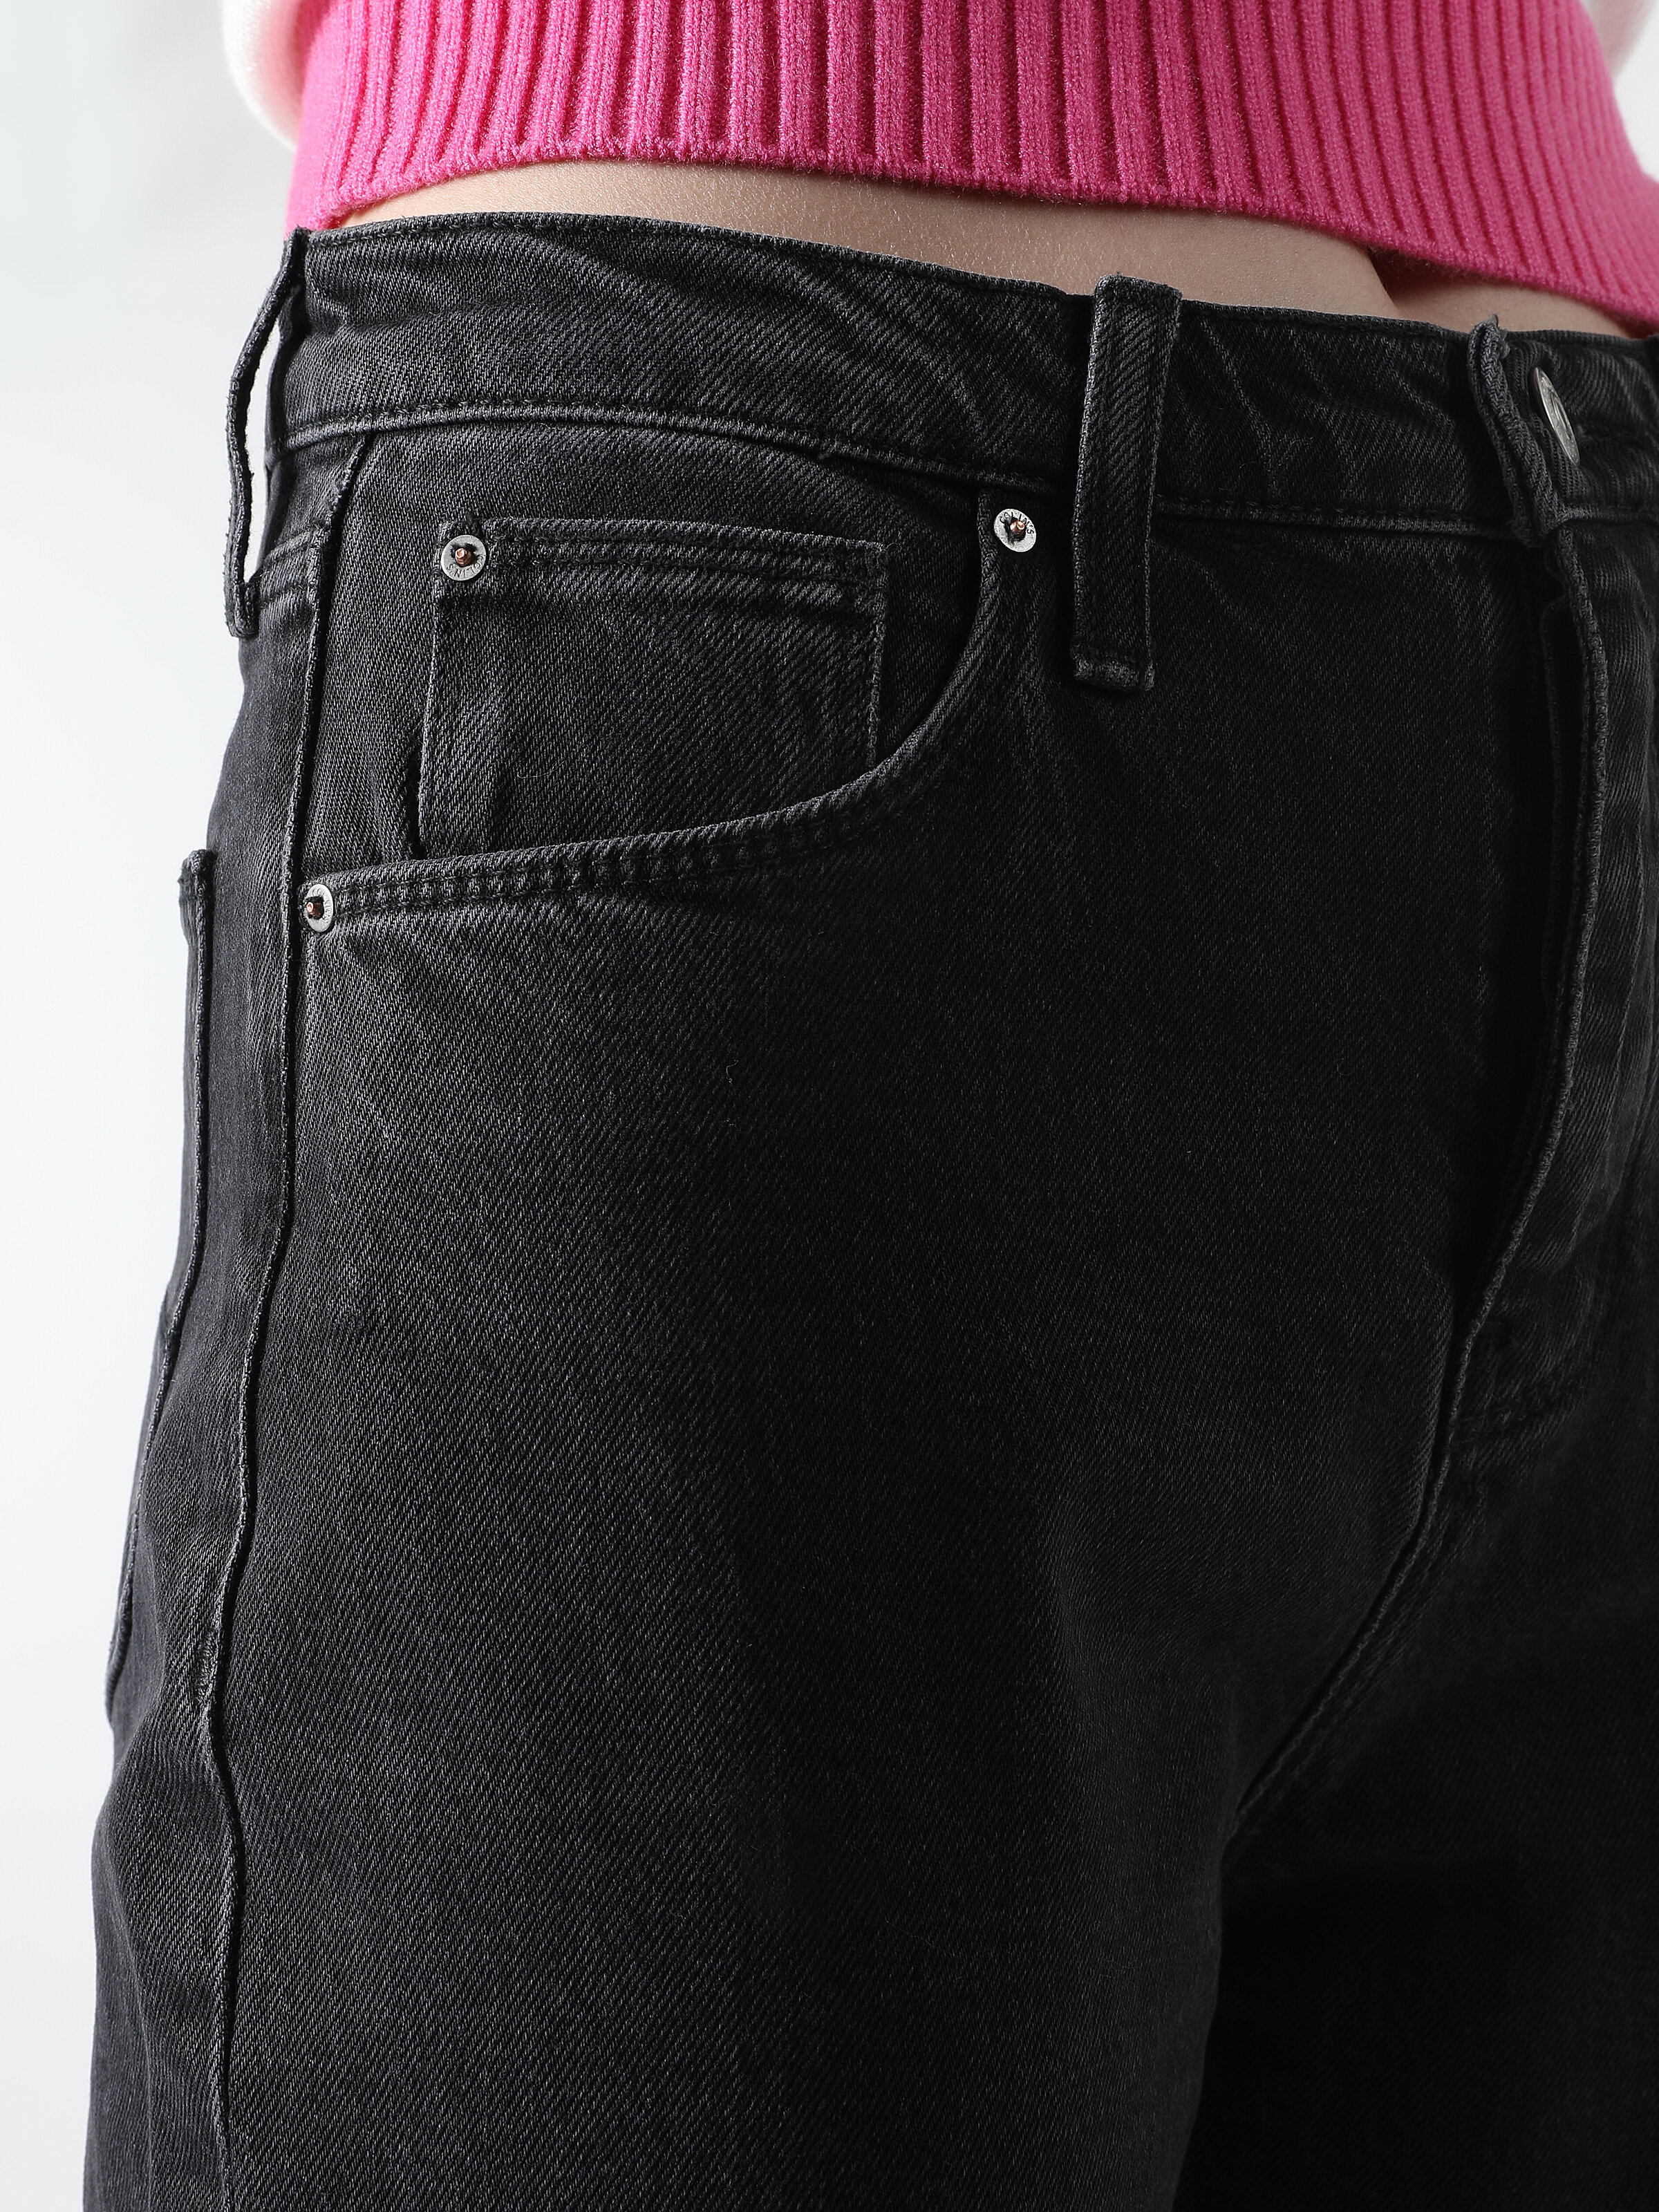 Afficher les détails de 900 Laris Pantalon Femme Coupe Normale Taille Haute Jambe Droite Denim